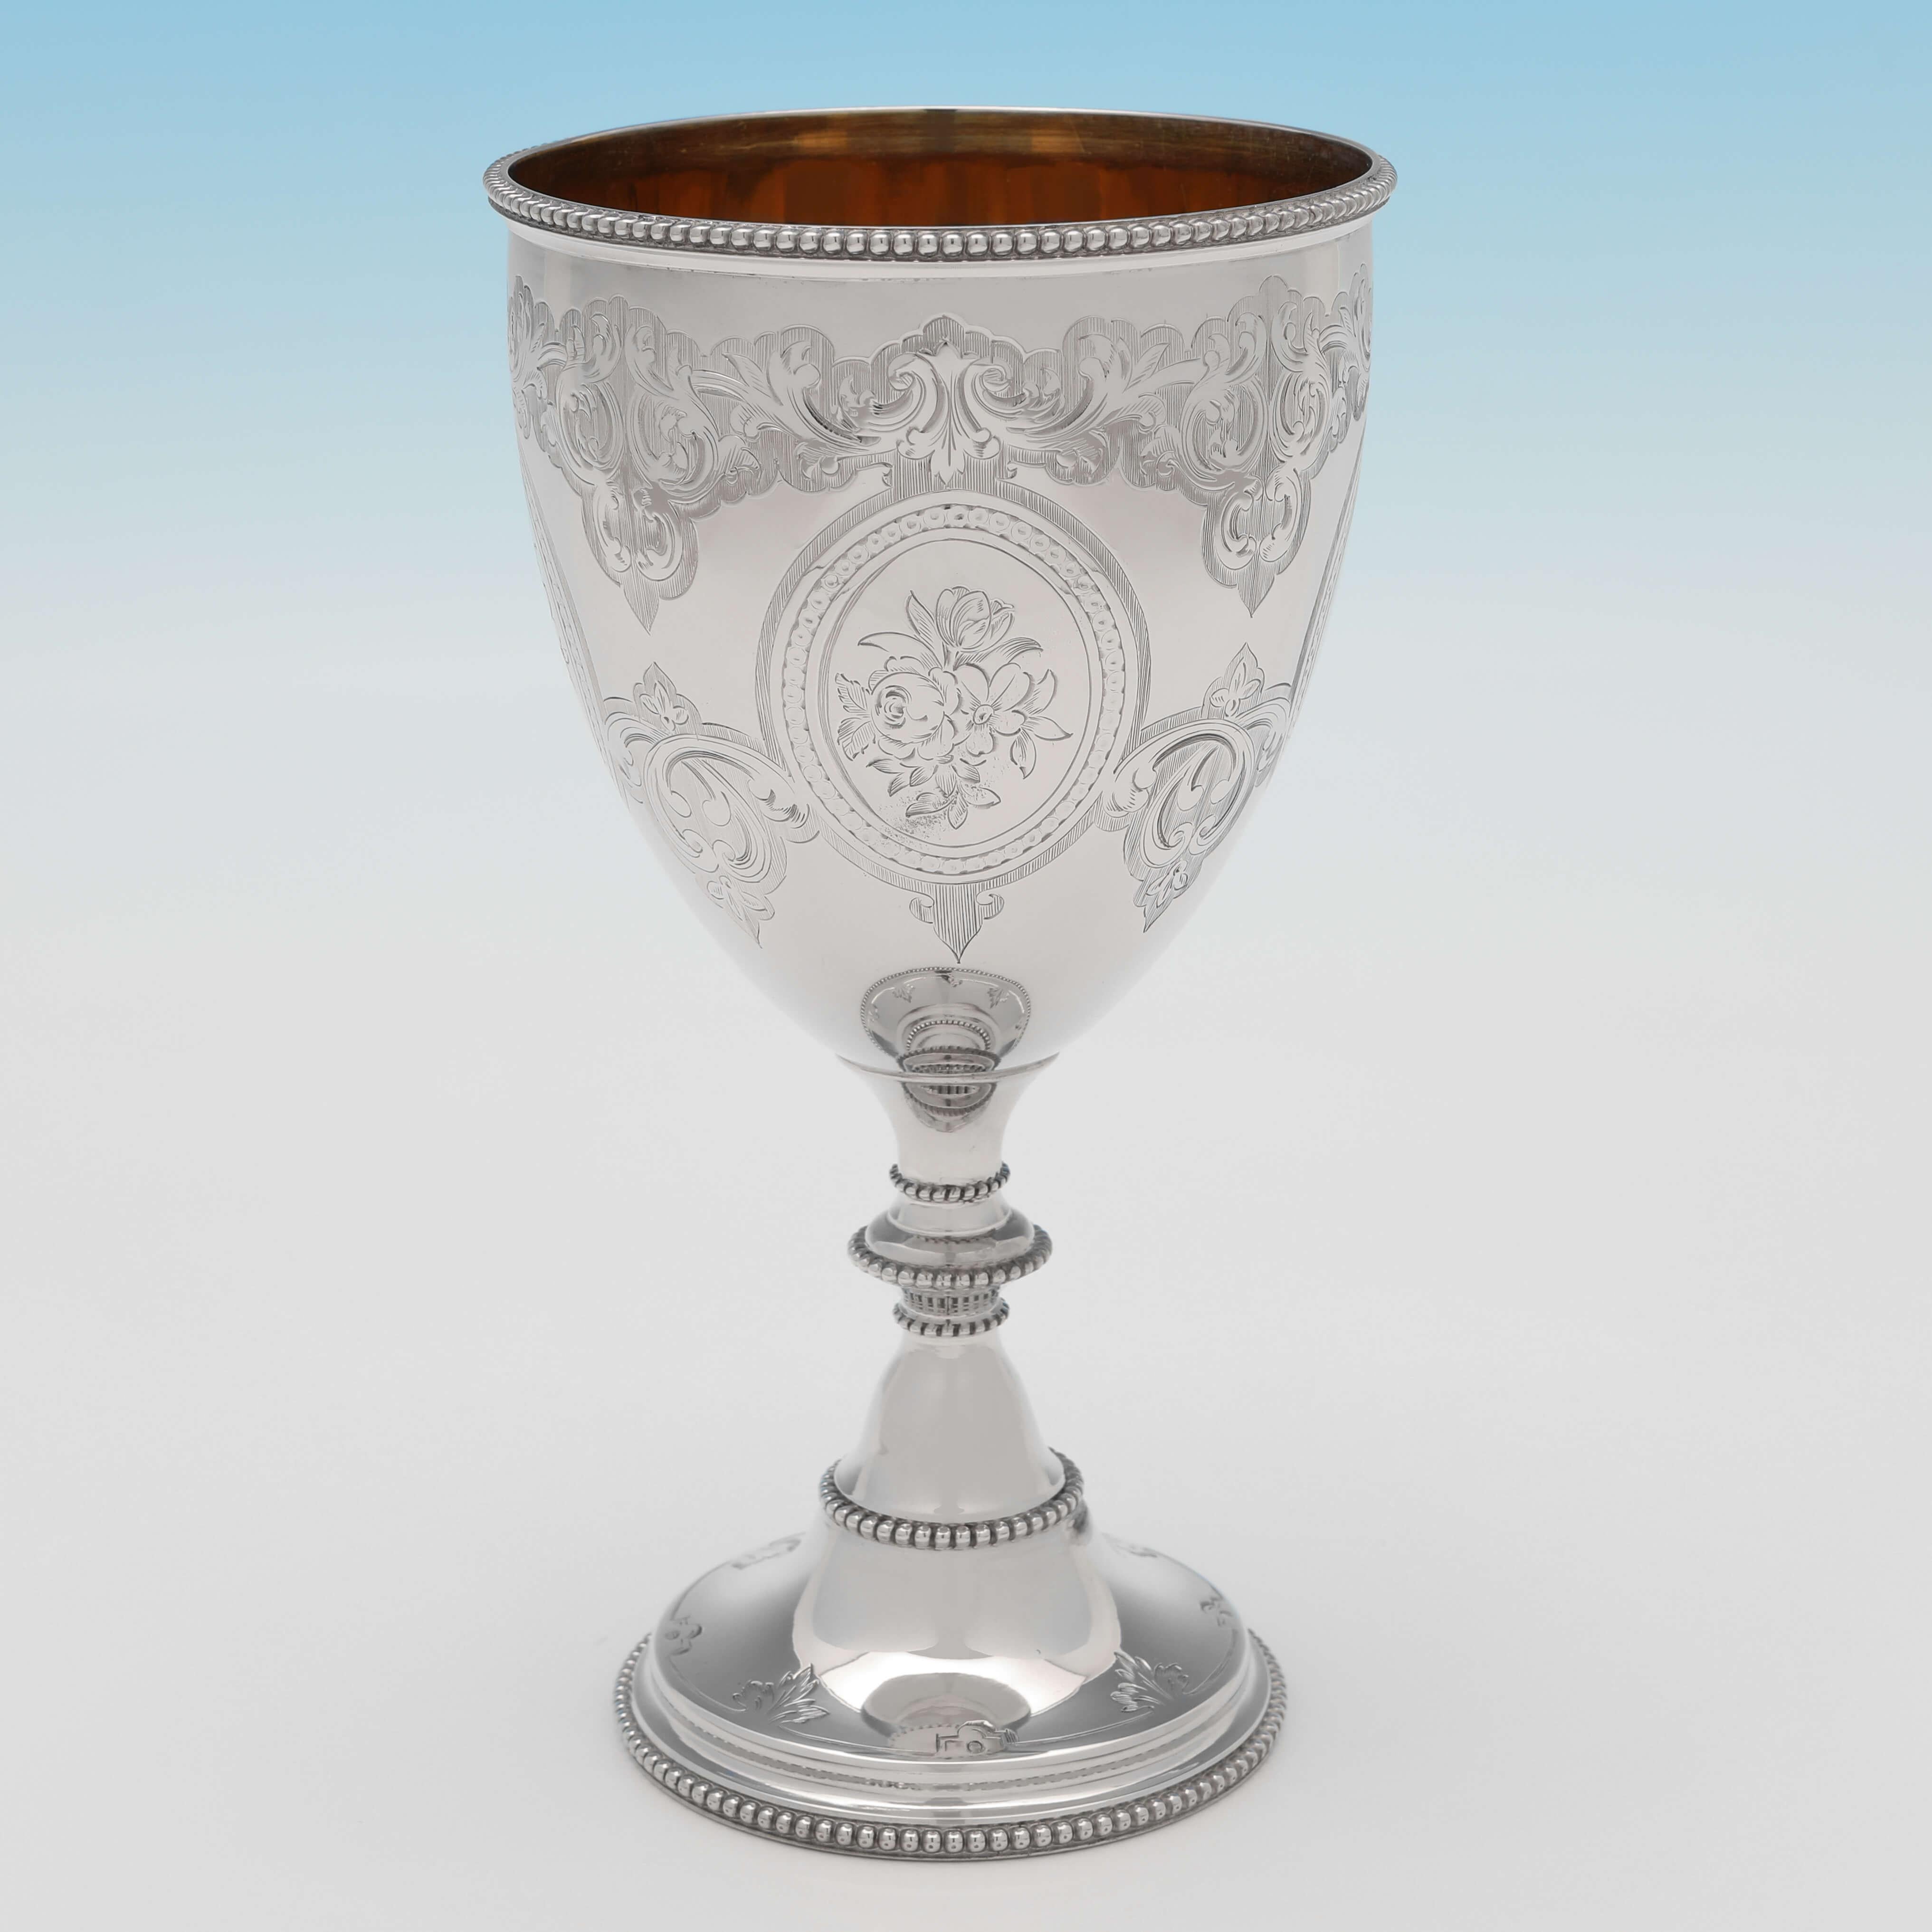 Marcada en Londres en 1861 por Henry Wilkinson, esta atractiva copa victoriana de plata de ley antigua presenta decoración grabada en el cuerpo, bordes de cuentas e interior dorado. La copa mide 16,5 cm de alto por 9 cm de diámetro y pesa 100 gramos